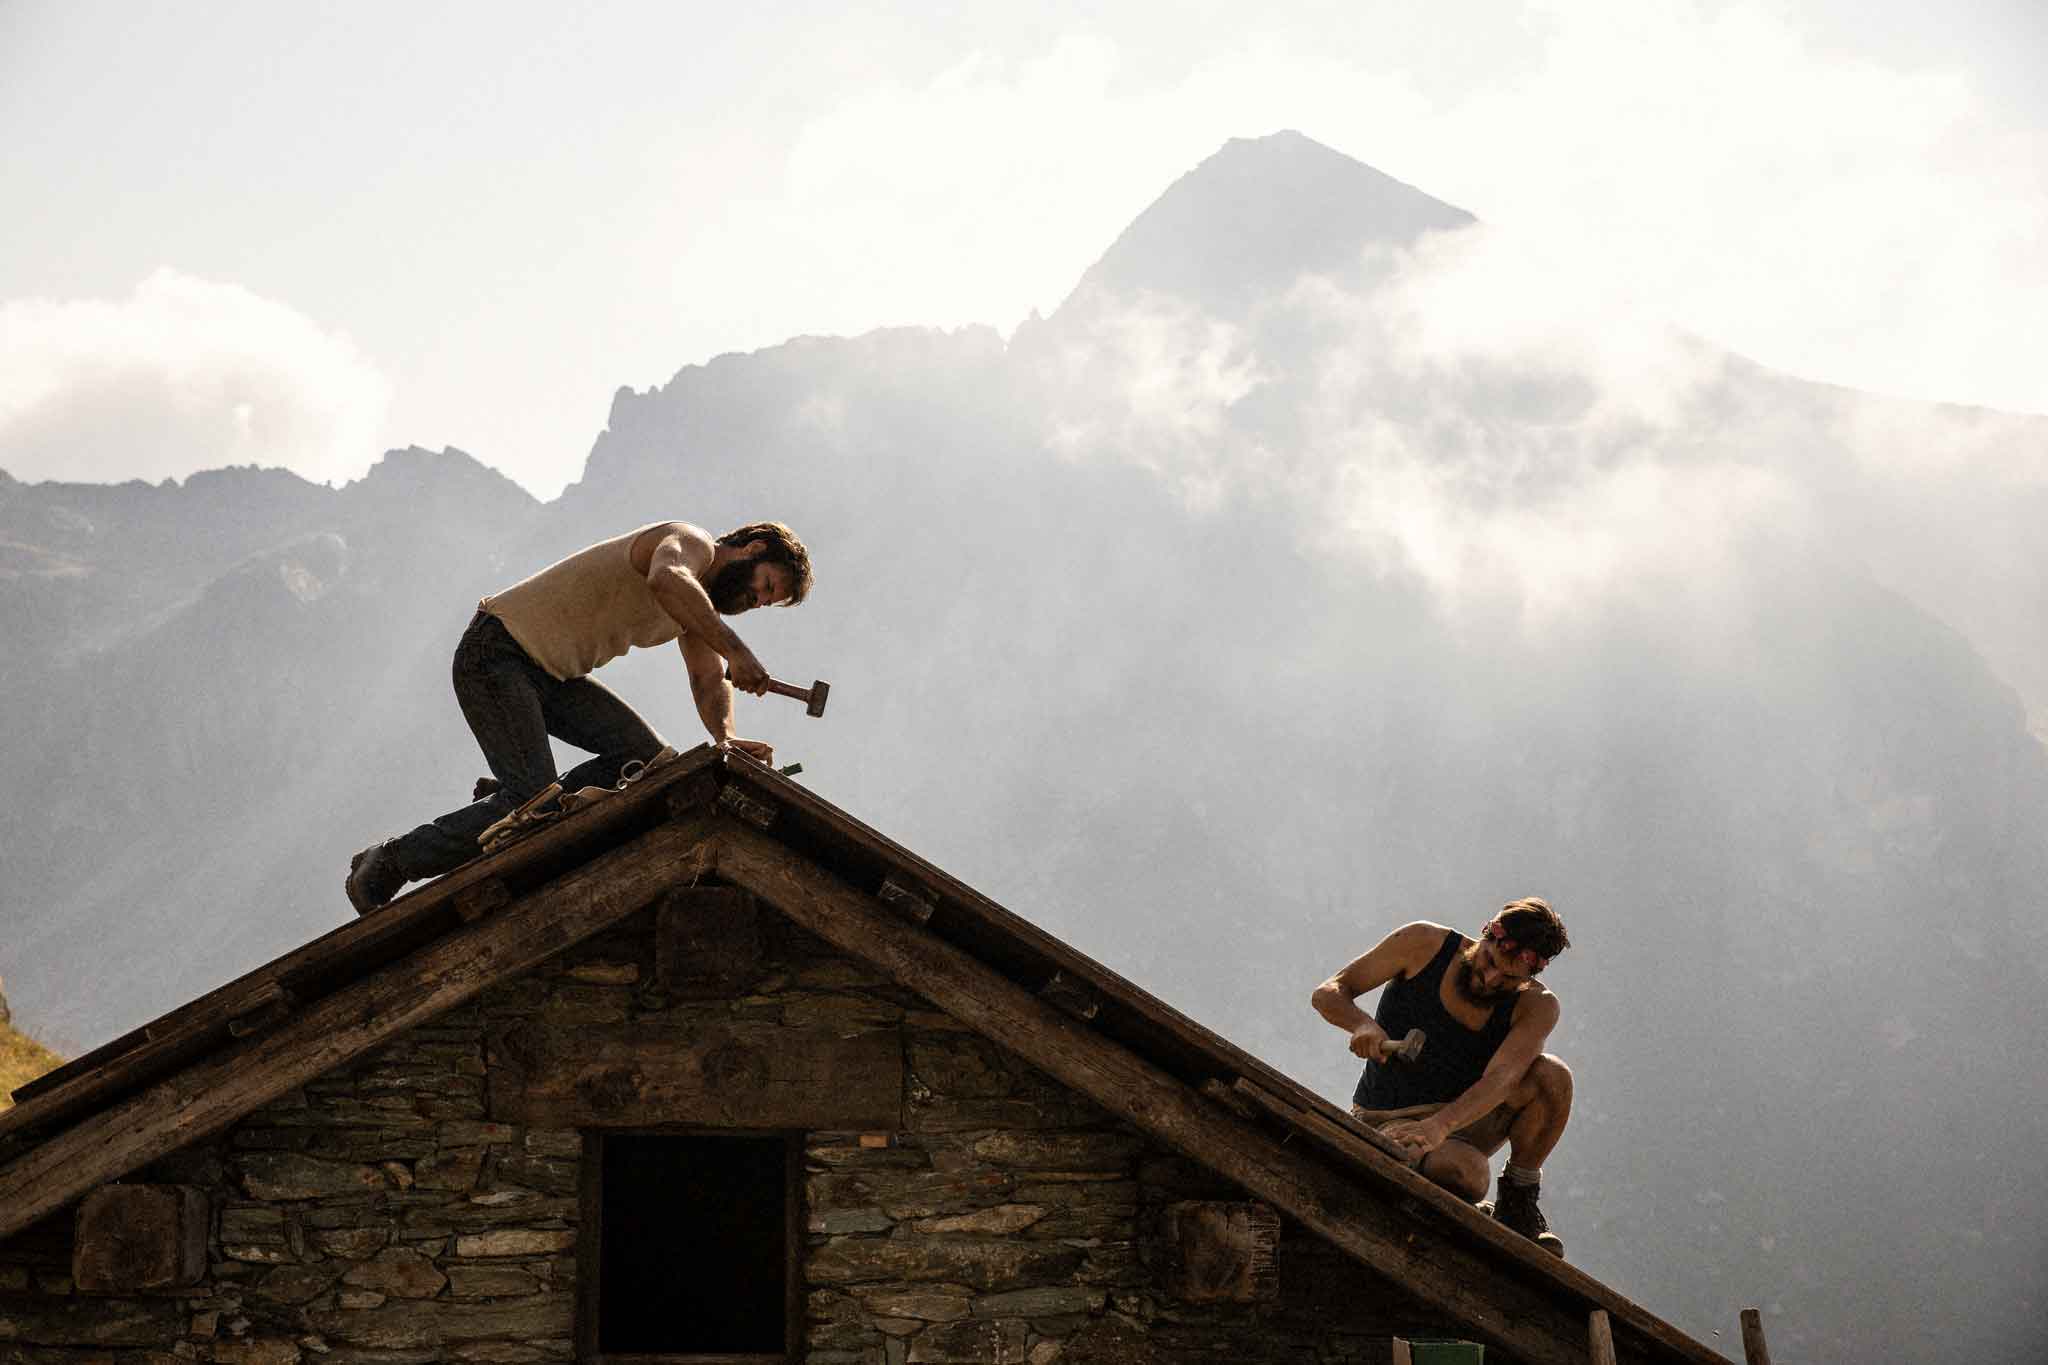 Le otto montagne recensione film con Alessandro Borghi e Luca Marinelli